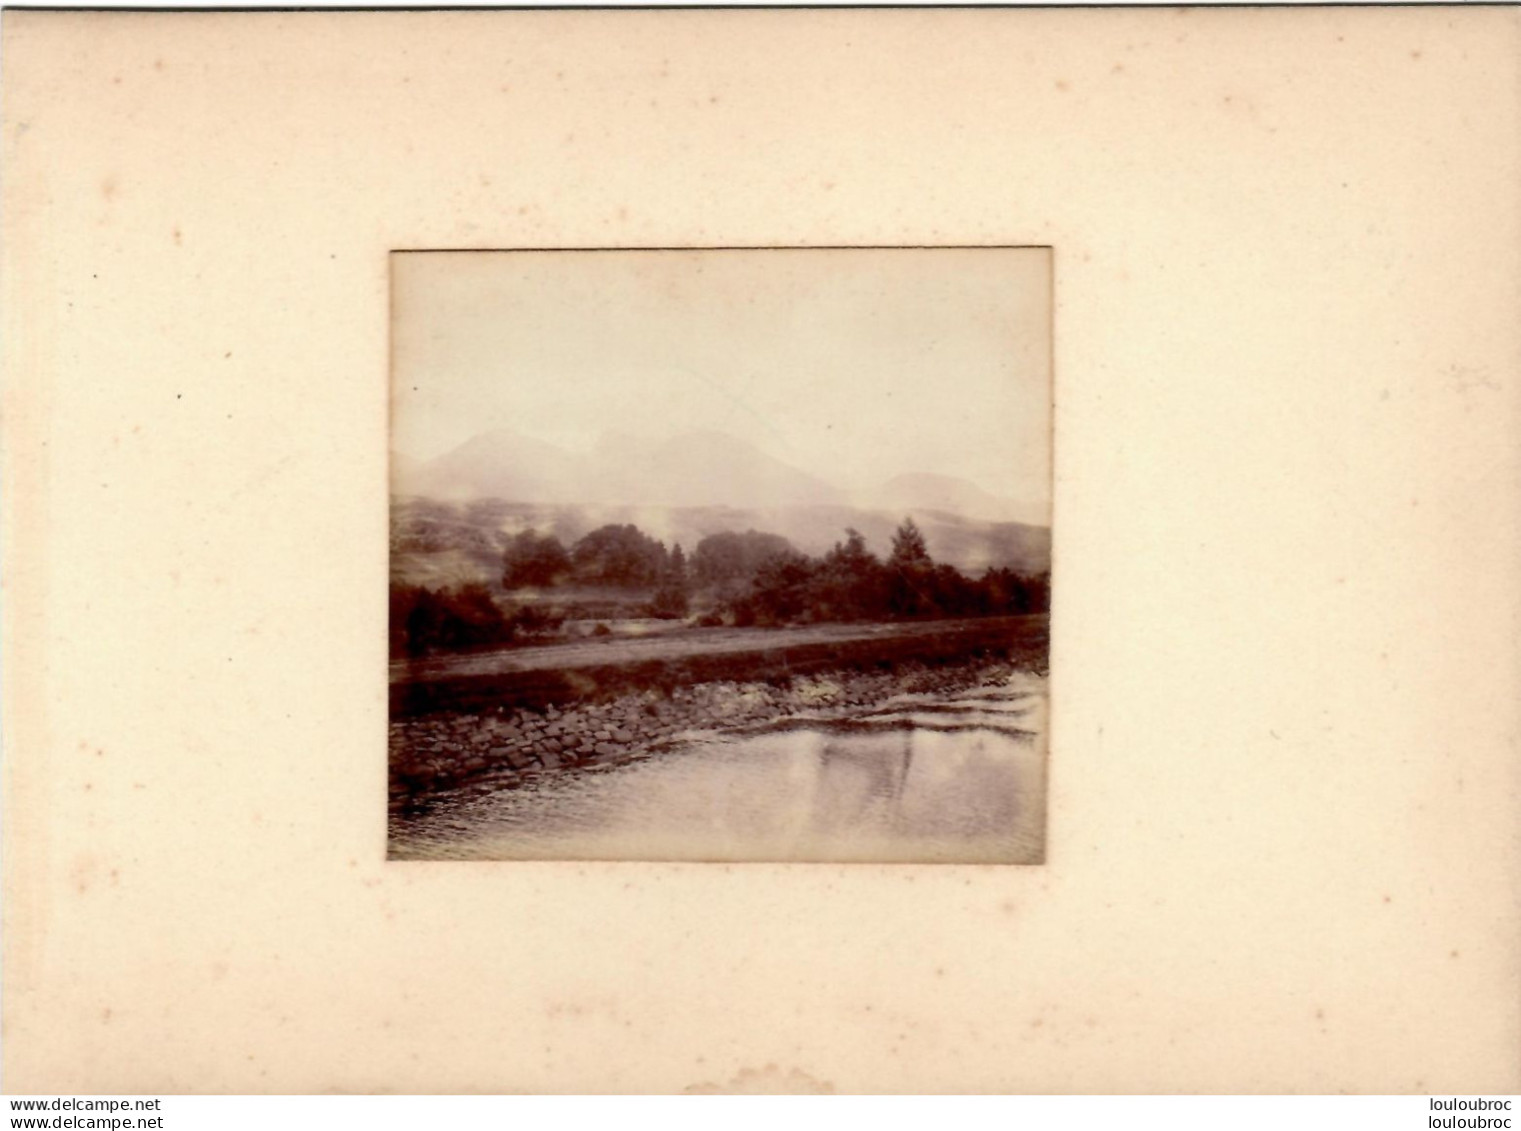 LE BEN-NEVIS ECOSSE CANAL CALEDONIEN FIN 19em PHOTO ORIGINALE 8x7CM COLLEE SUR CARTON DE 18x13cm - Old (before 1900)